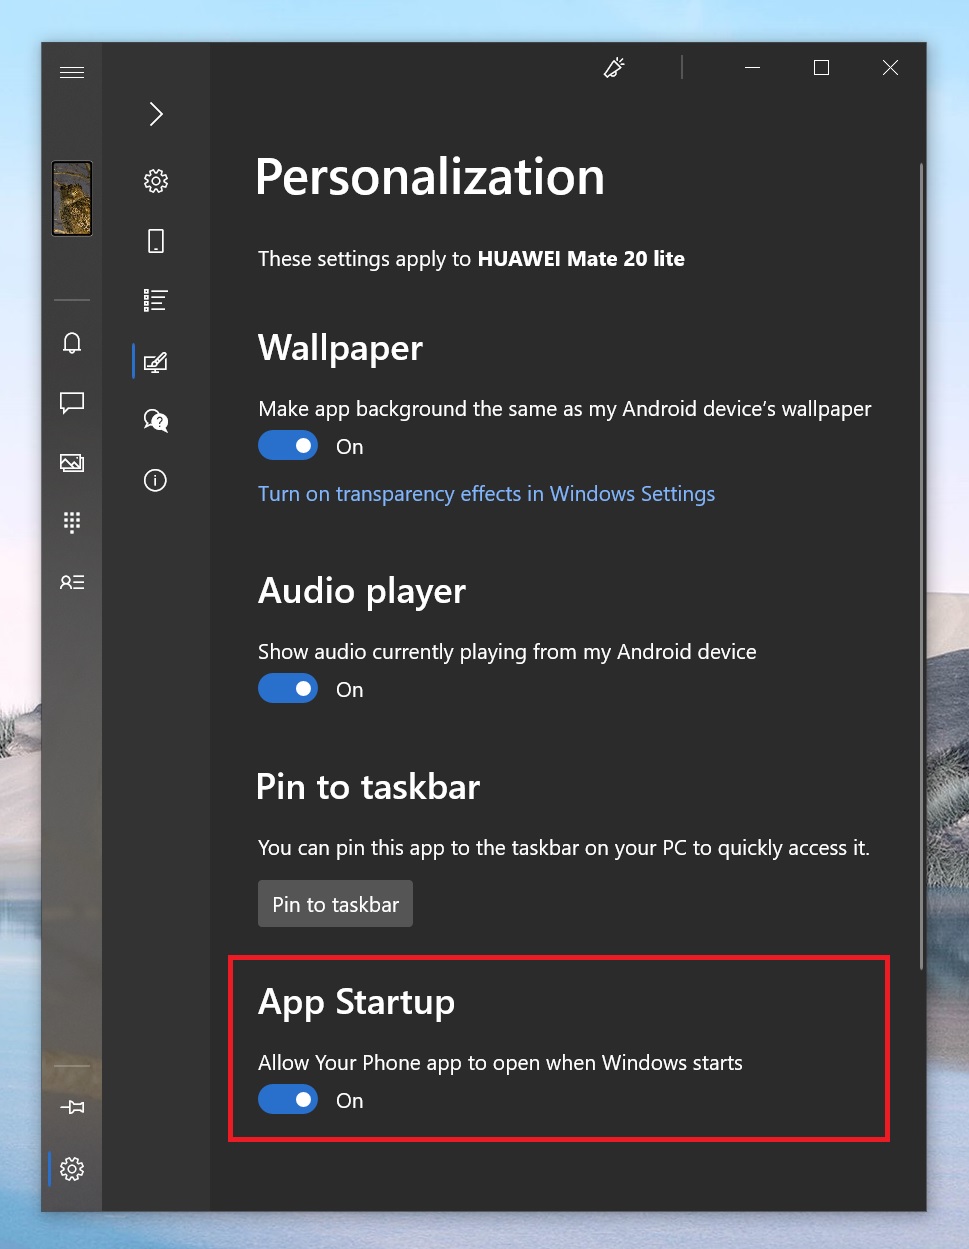 Приложение «Ваш телефон» для Windows 10 получило новые функции